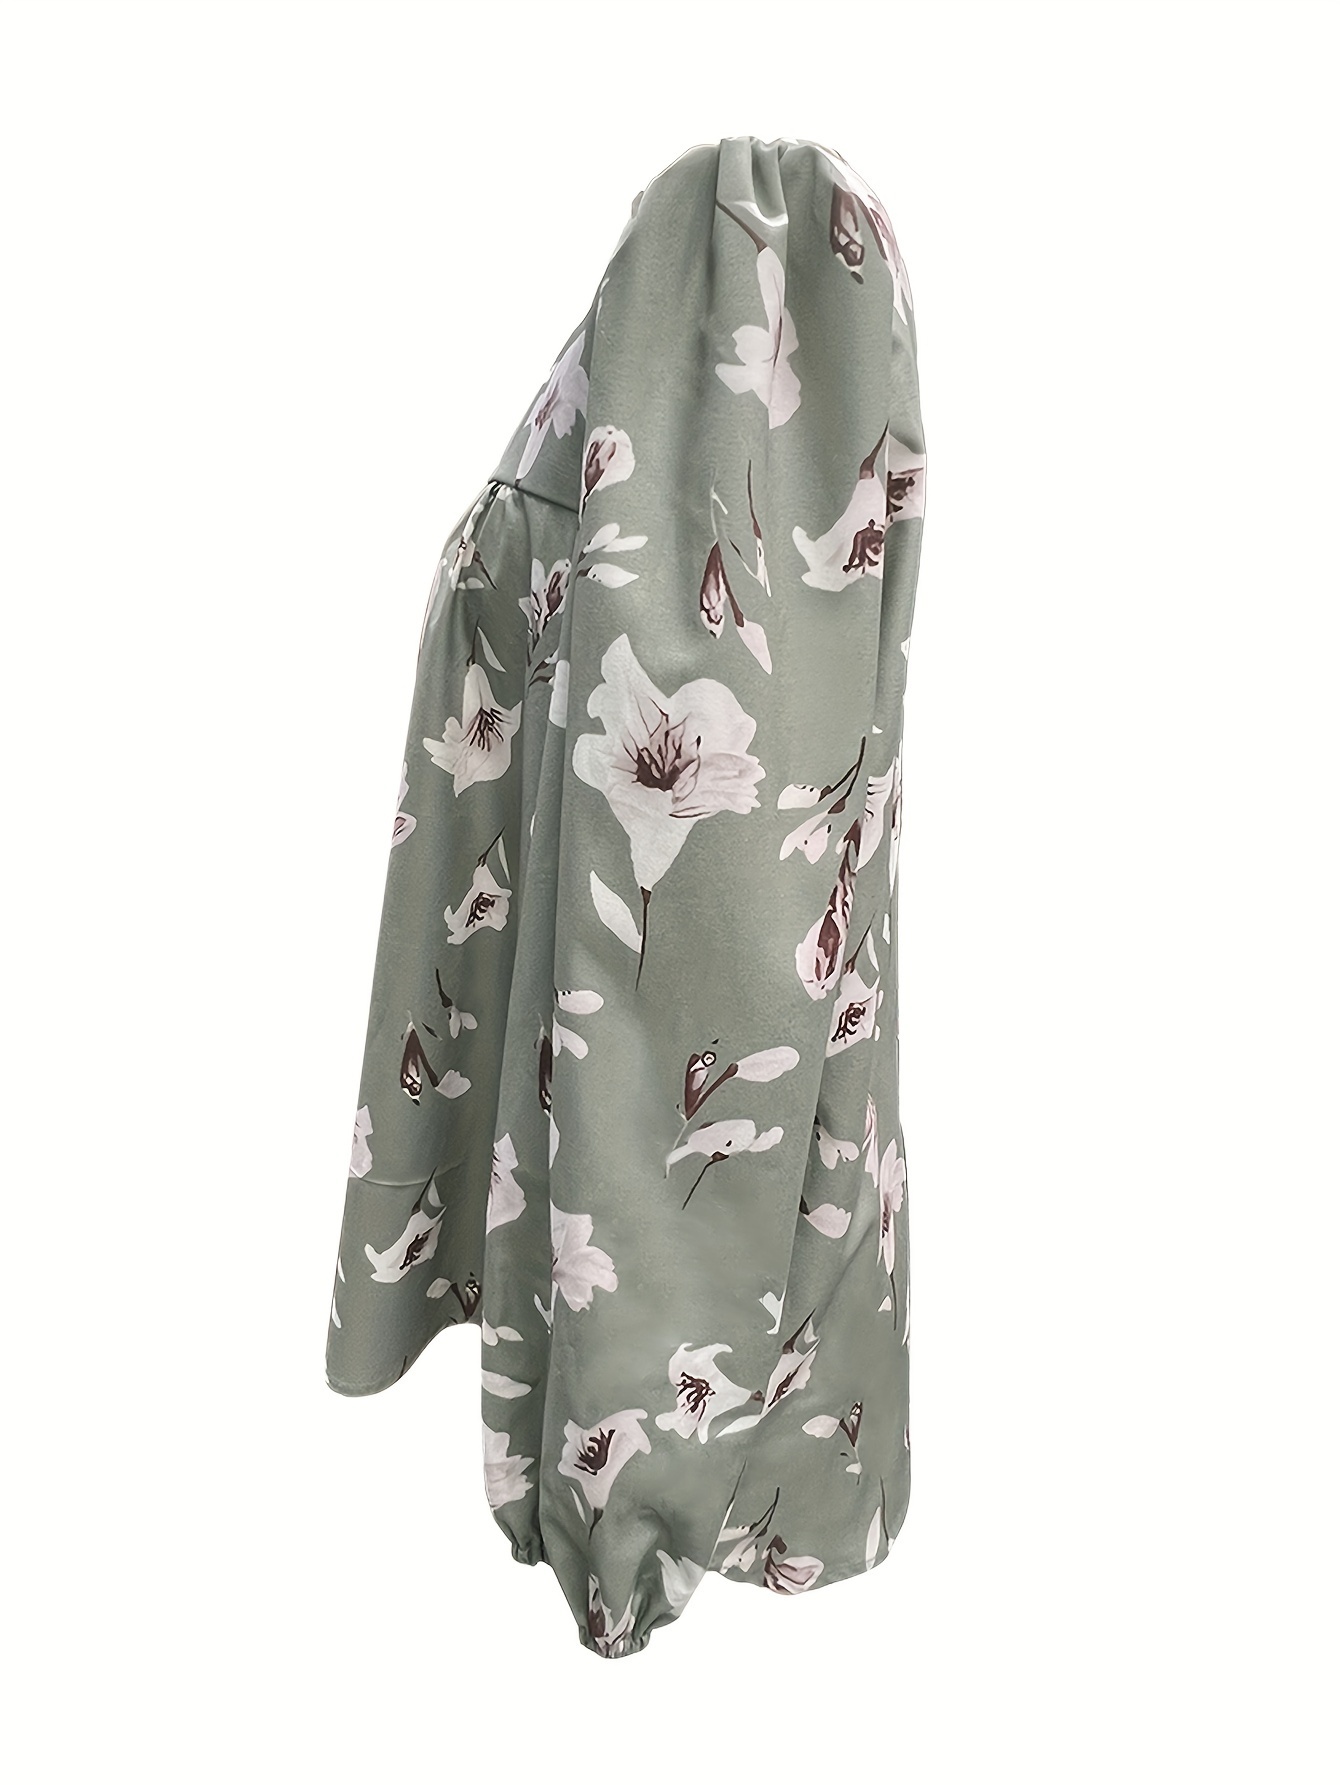 Блуза з квітковим принтом та складками на комірі, повсякденна блуза з довгим рукавом для весни та осені, жіночий одяг